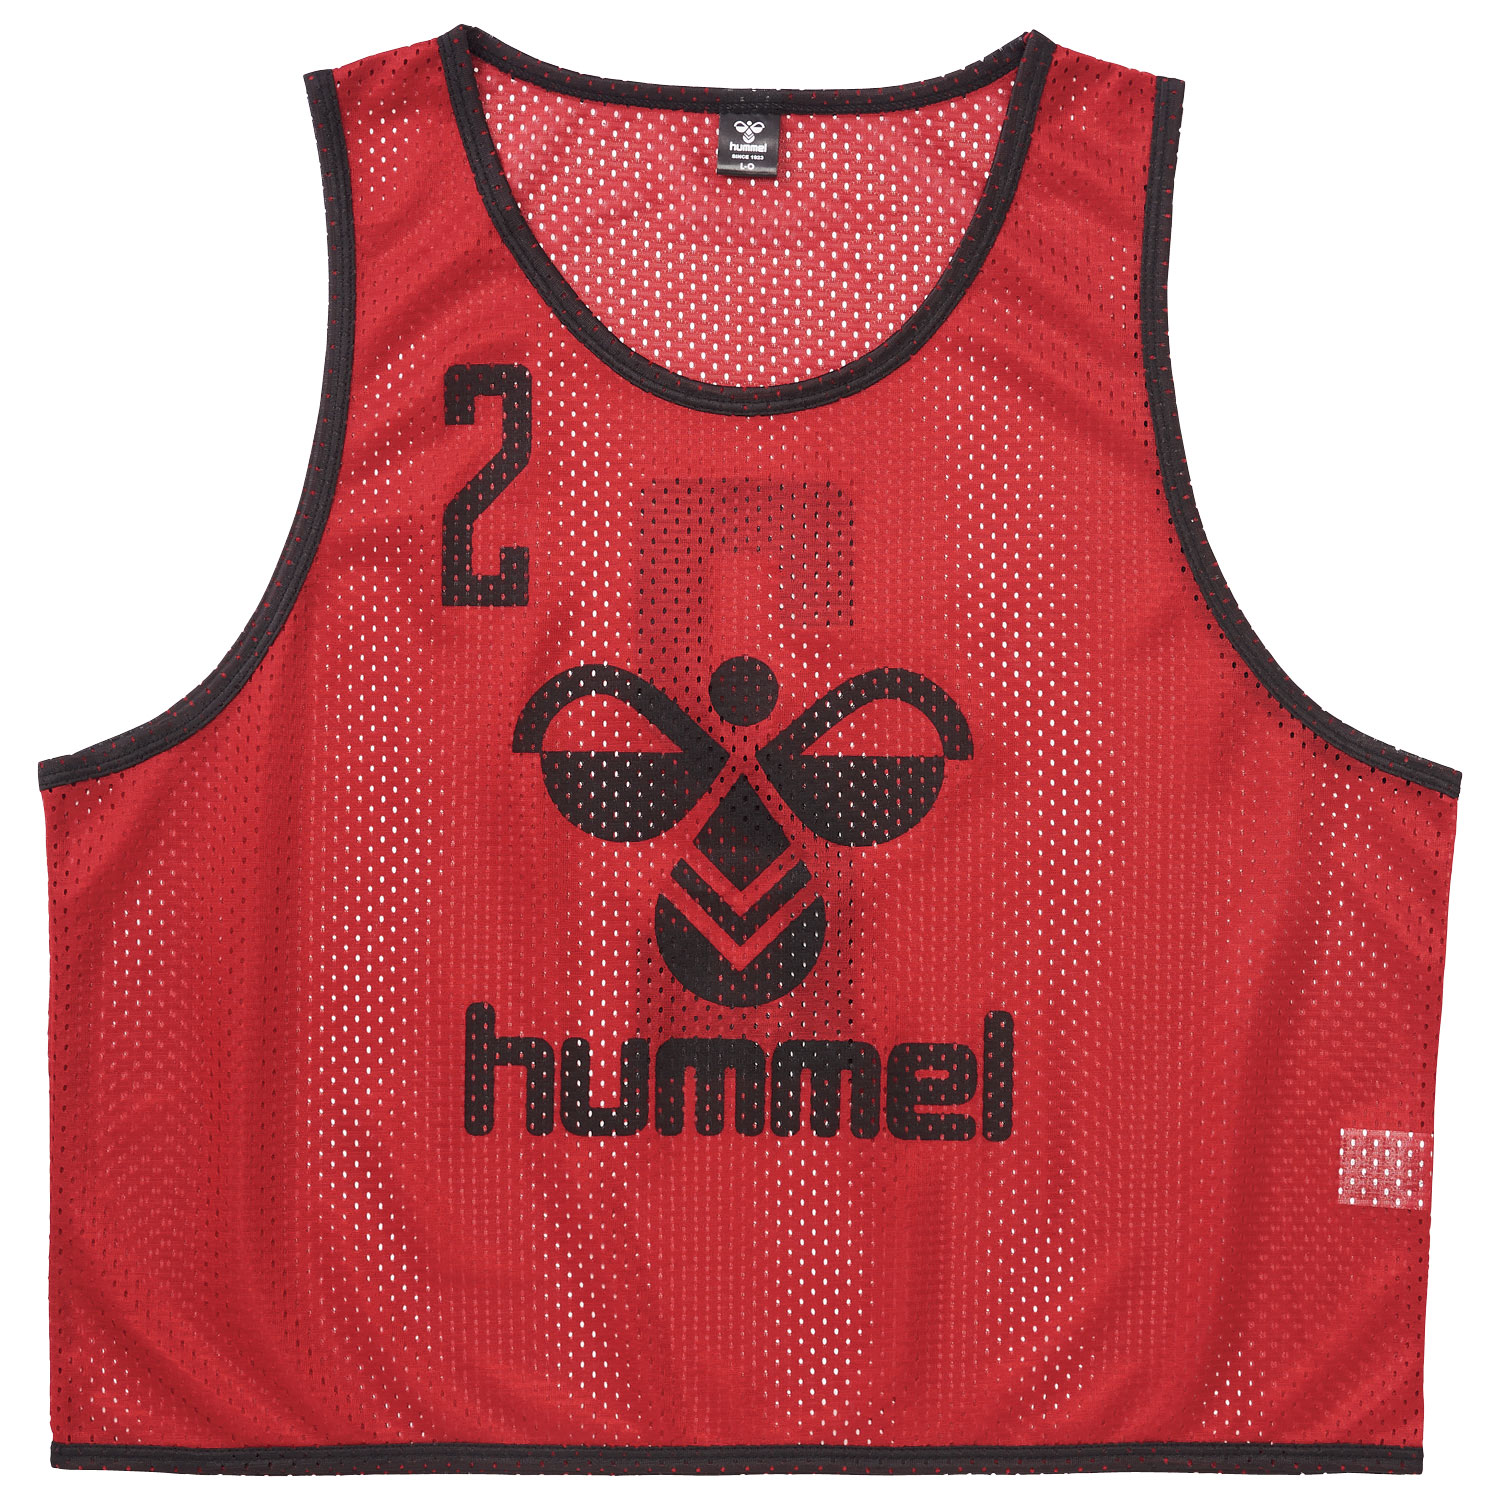 hummel(ヒュンメル)-S ジュニアトレーニングビブス(10枚セット) レッド ...